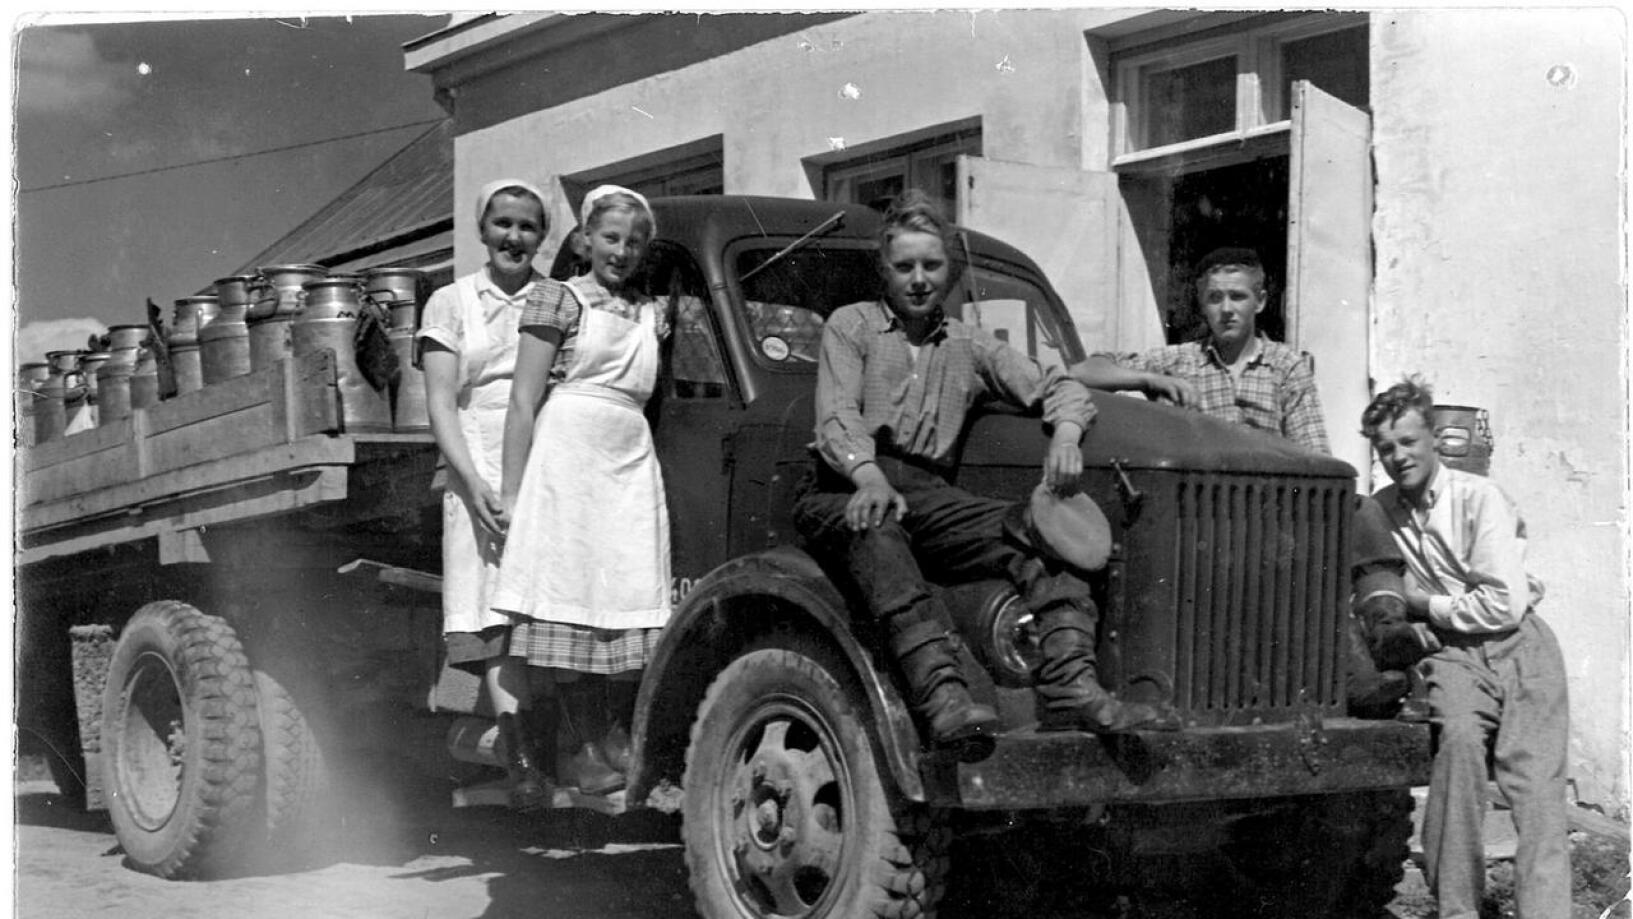 Kuvassa Eino Korkiakoski, hänen veljensä Eero Korkiakoski, Eero Toivola ja kaksi harjoittelijatyttöä poseeraamassa viritetyn GAZ kuorma-auton kanssa.